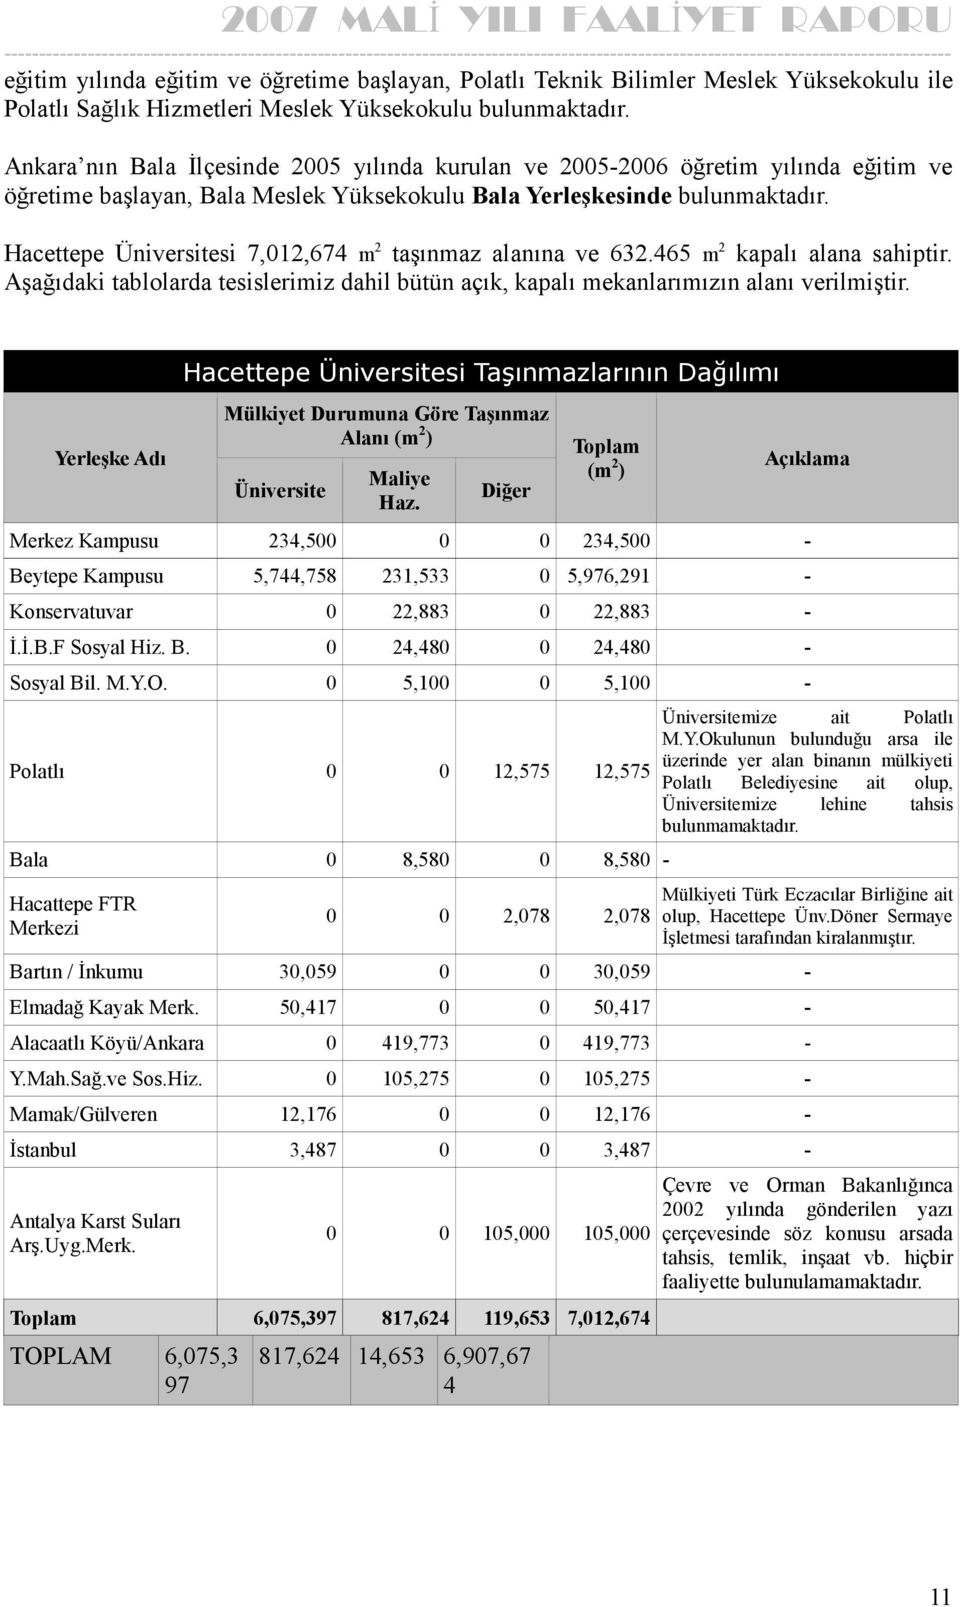 Hacettepe Üniversitesi 7,012,674 m 2 taşınmaz alanına ve 632.465 m 2 kapalı alana sahiptir. Aşağıdaki tablolarda tesislerimiz dahil bütün açık, kapalı mekanlarımızın alanı verilmiştir.